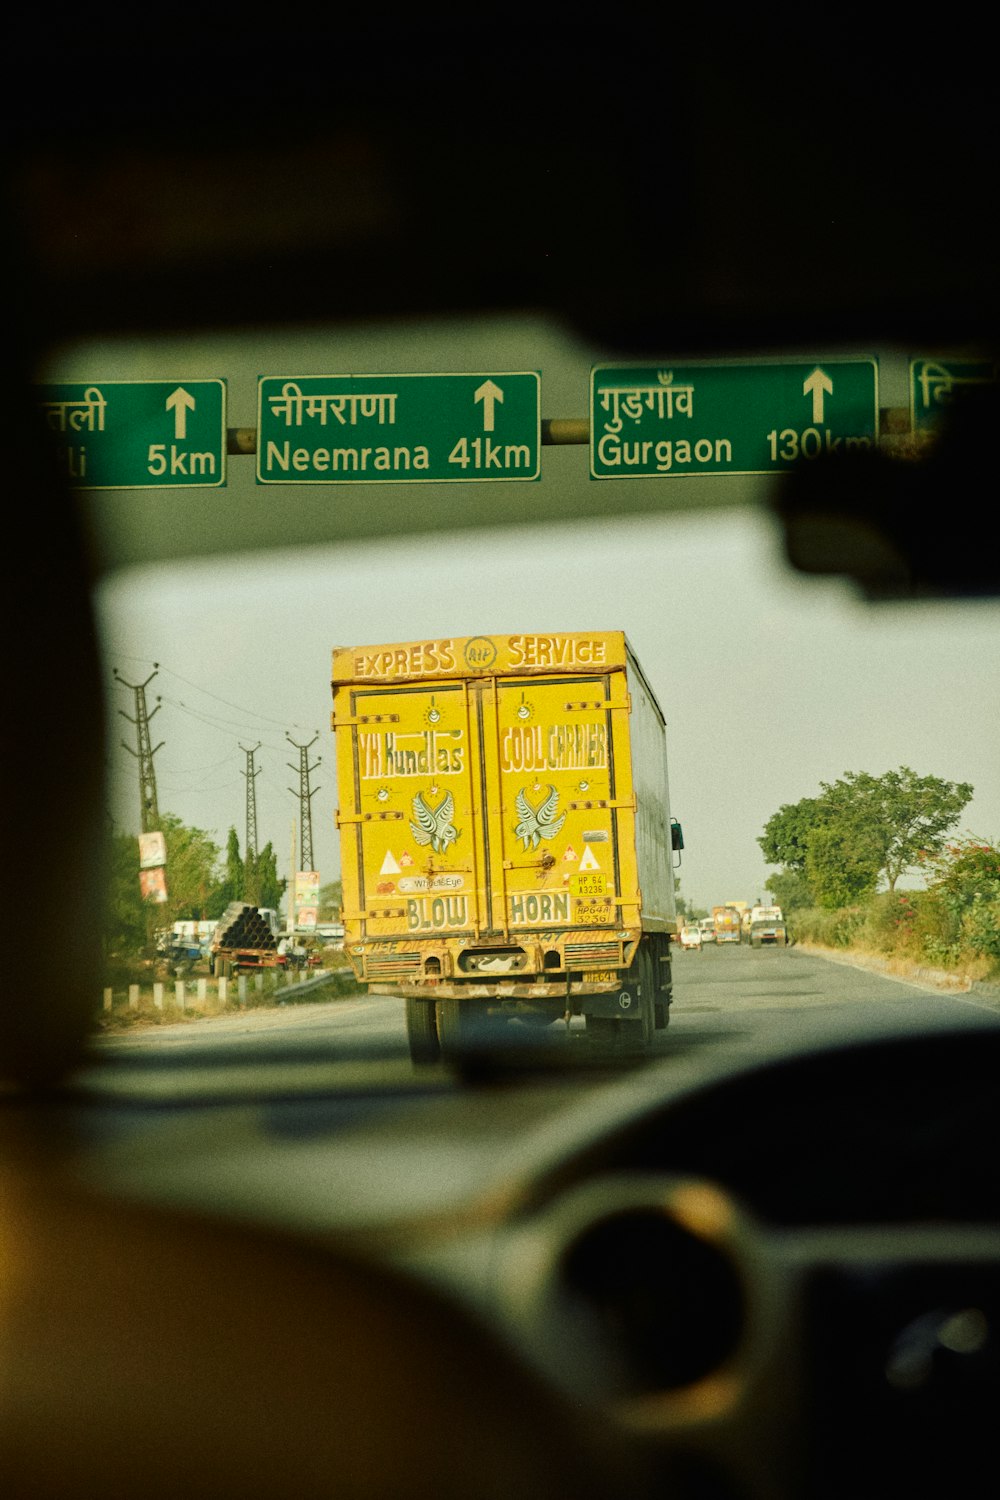 Ein gelber Lastwagen fährt neben einem grünen Schild eine Straße entlang